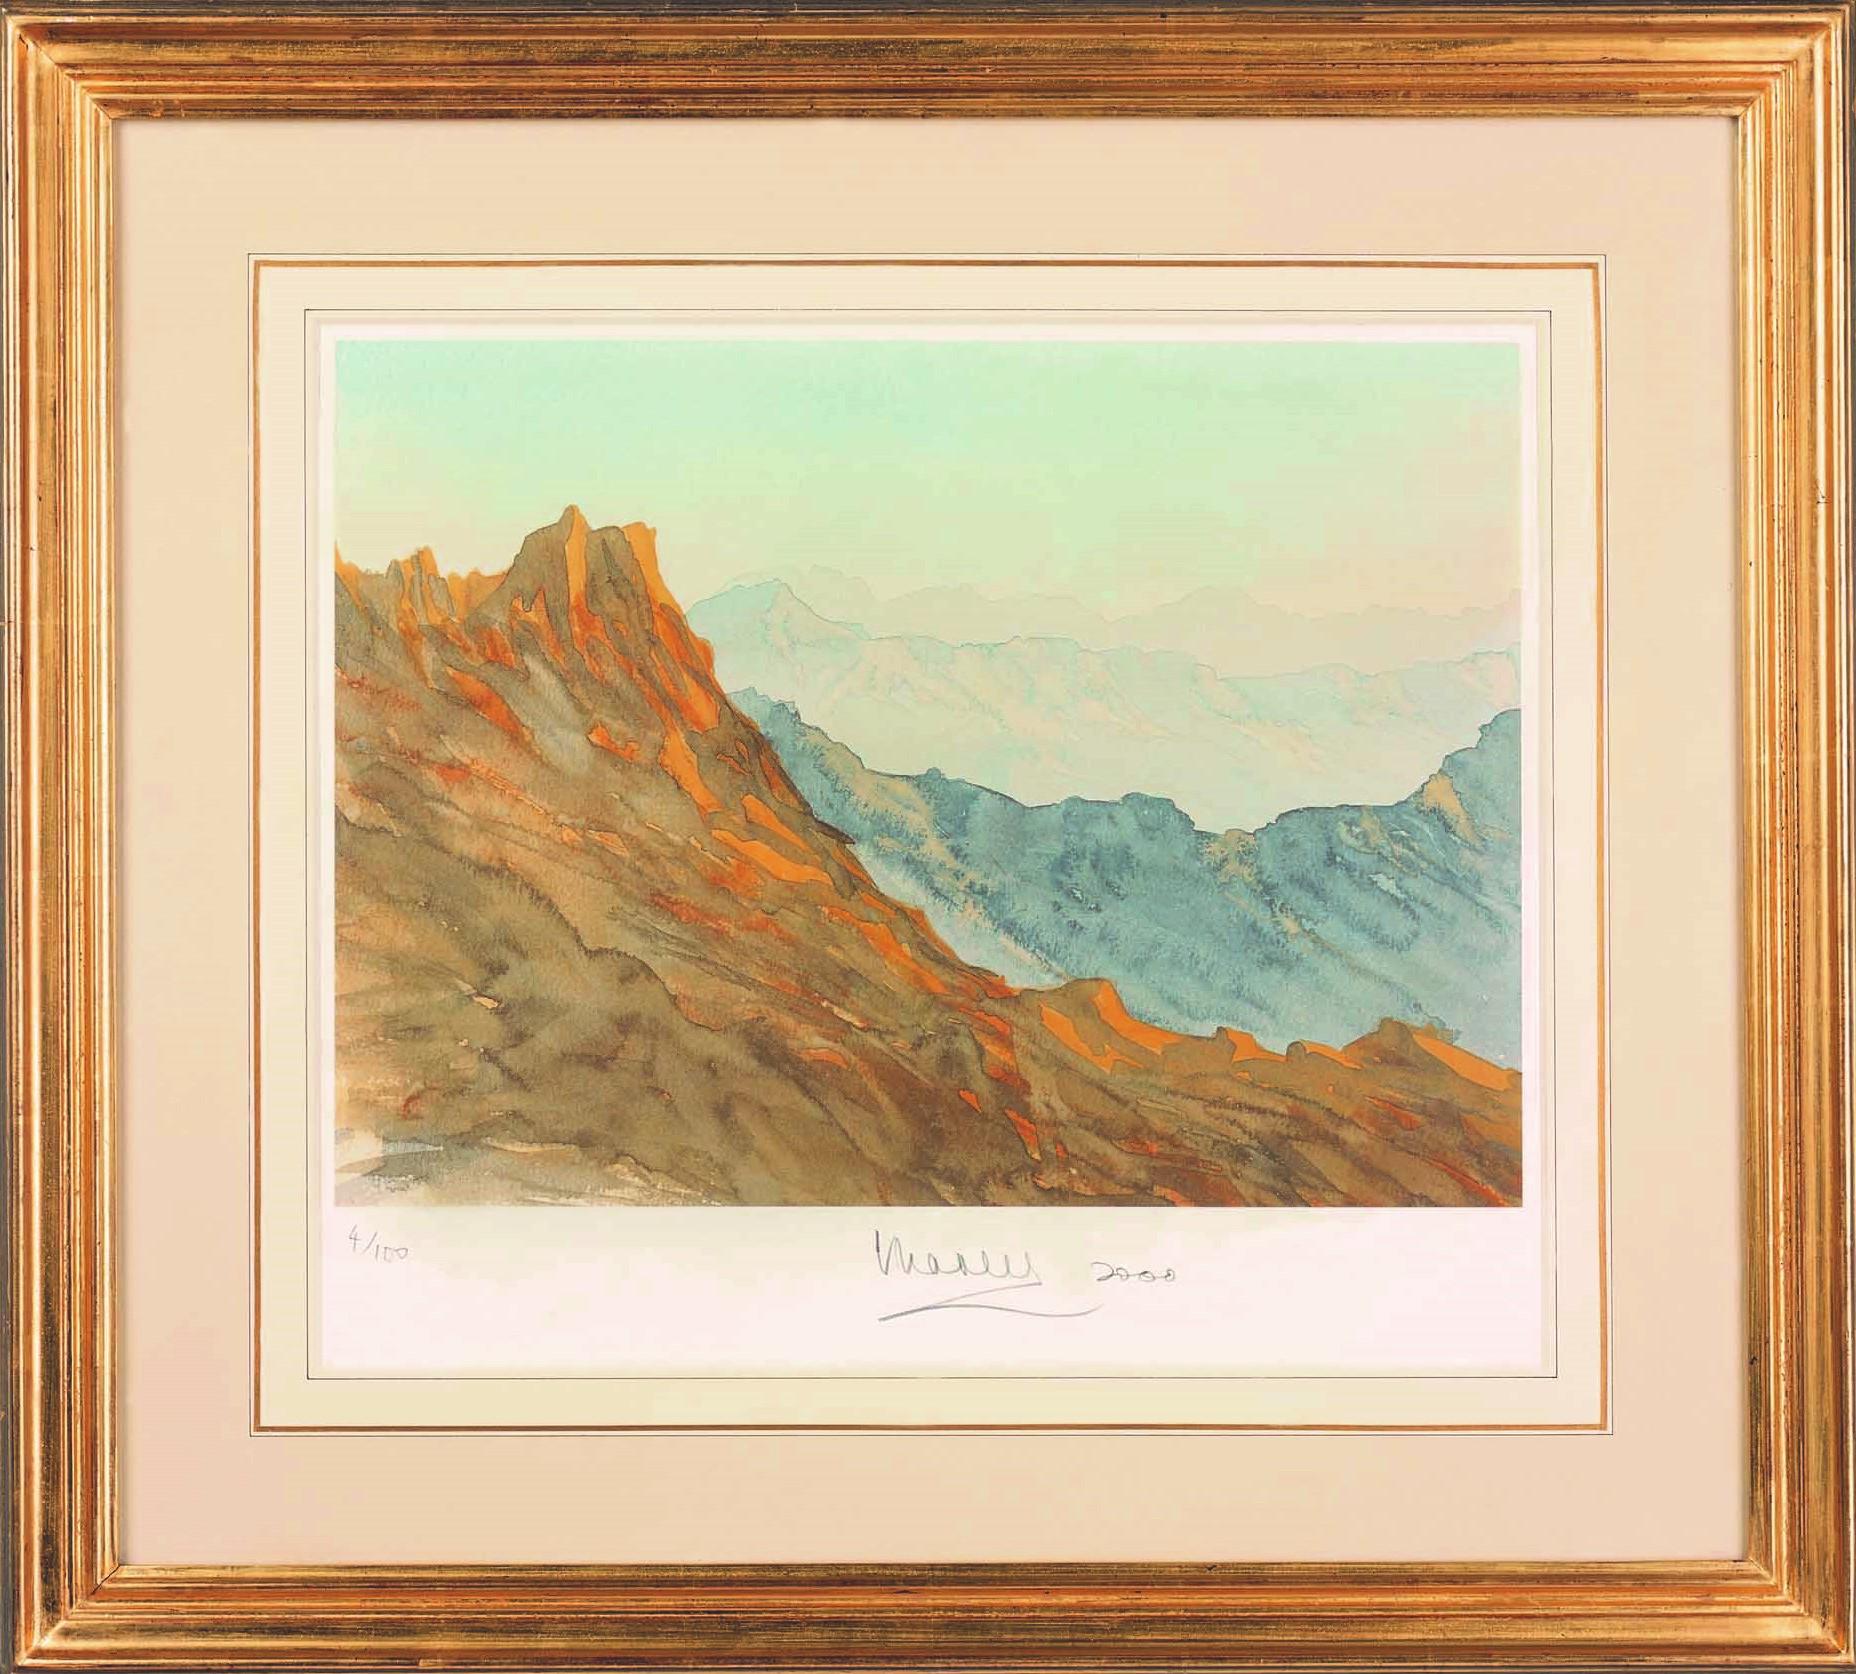 Überblick auf Wadi, Saudi-Arabien – signierte Lithographie, Königliche Kunst, Berge, Asir – Print von His Majesty King Charles III